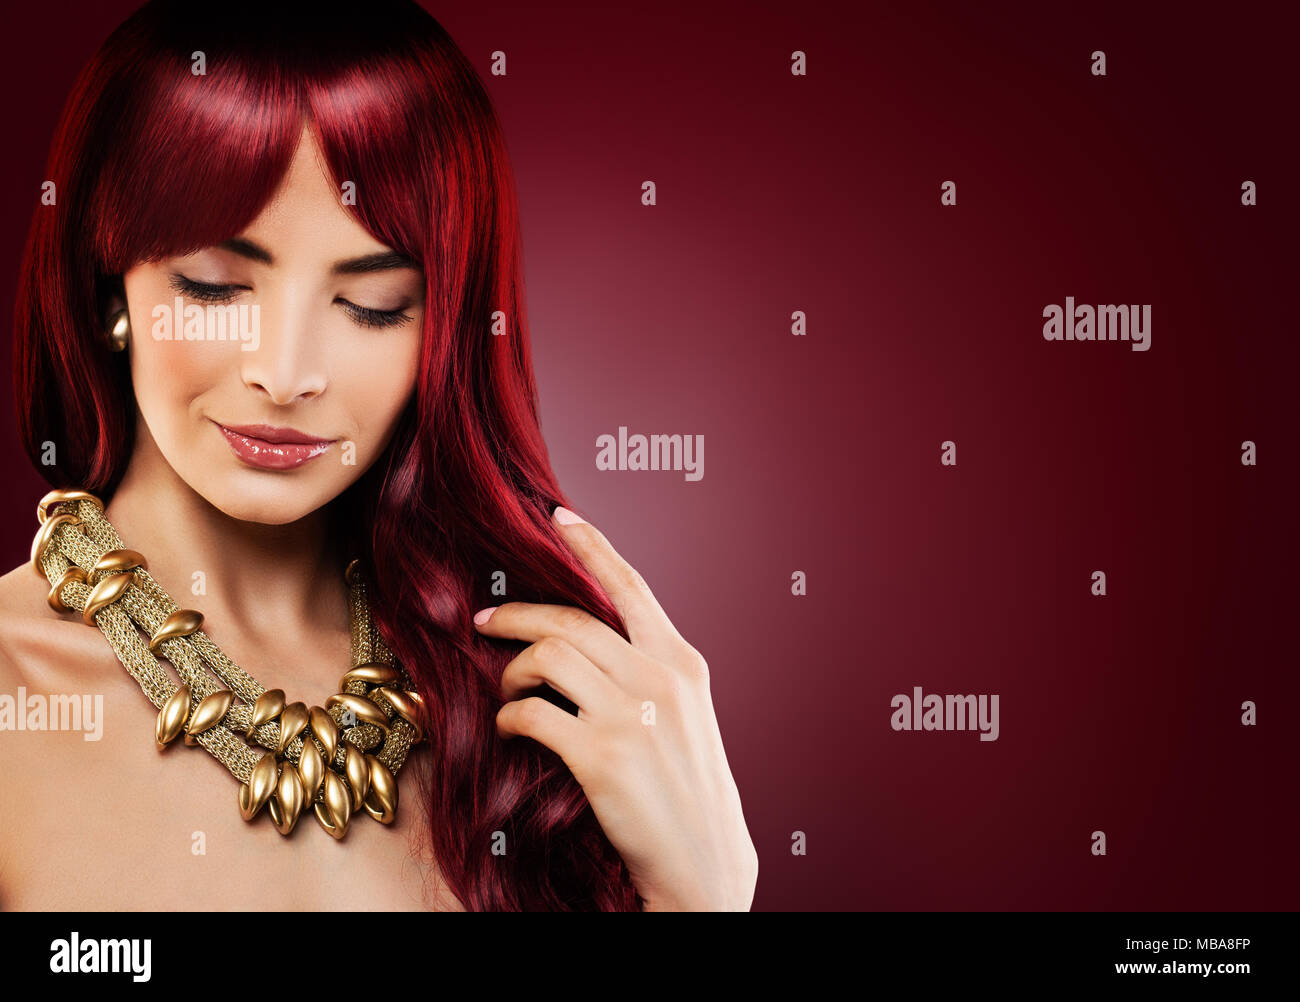 Mannequin Femme avec les cheveux bouclés rouge. Belle jeune fille rousse sur l'arrière-plan Banque D'Images